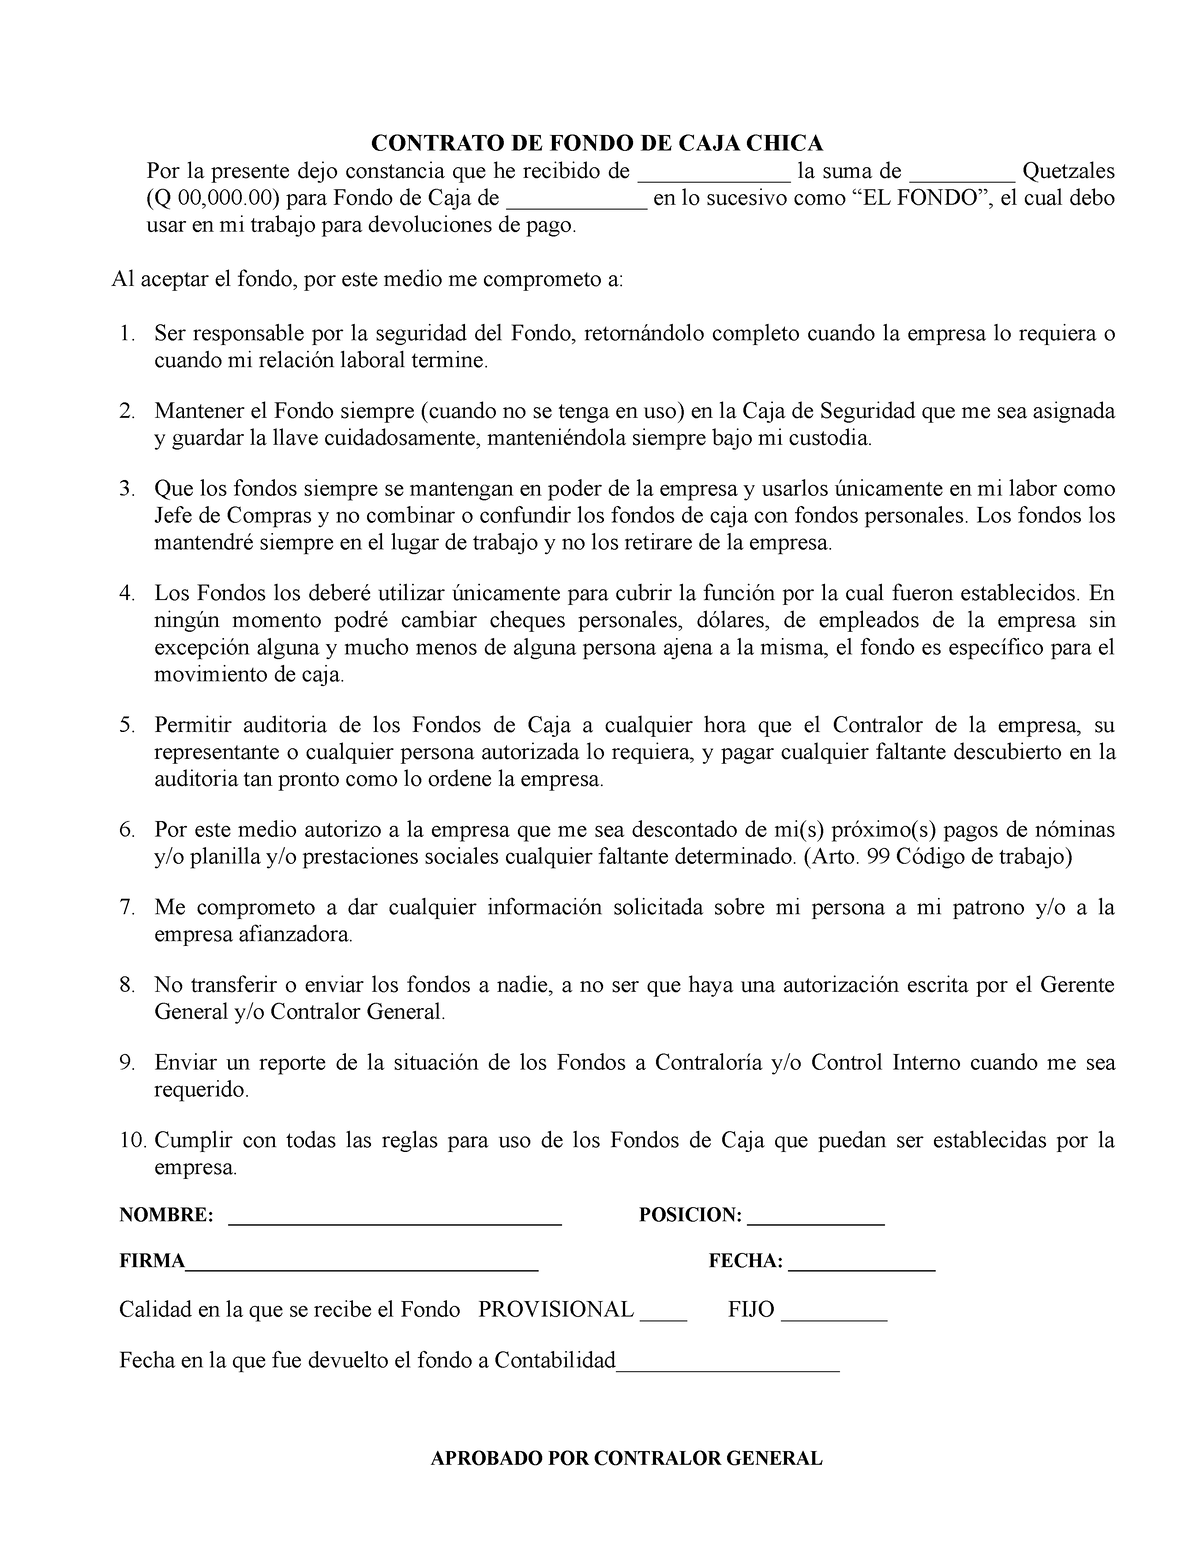 Formato Para Realizar Un Contrato De Caja Chica Contrato De Fondo De Caja Chica Por La 4729